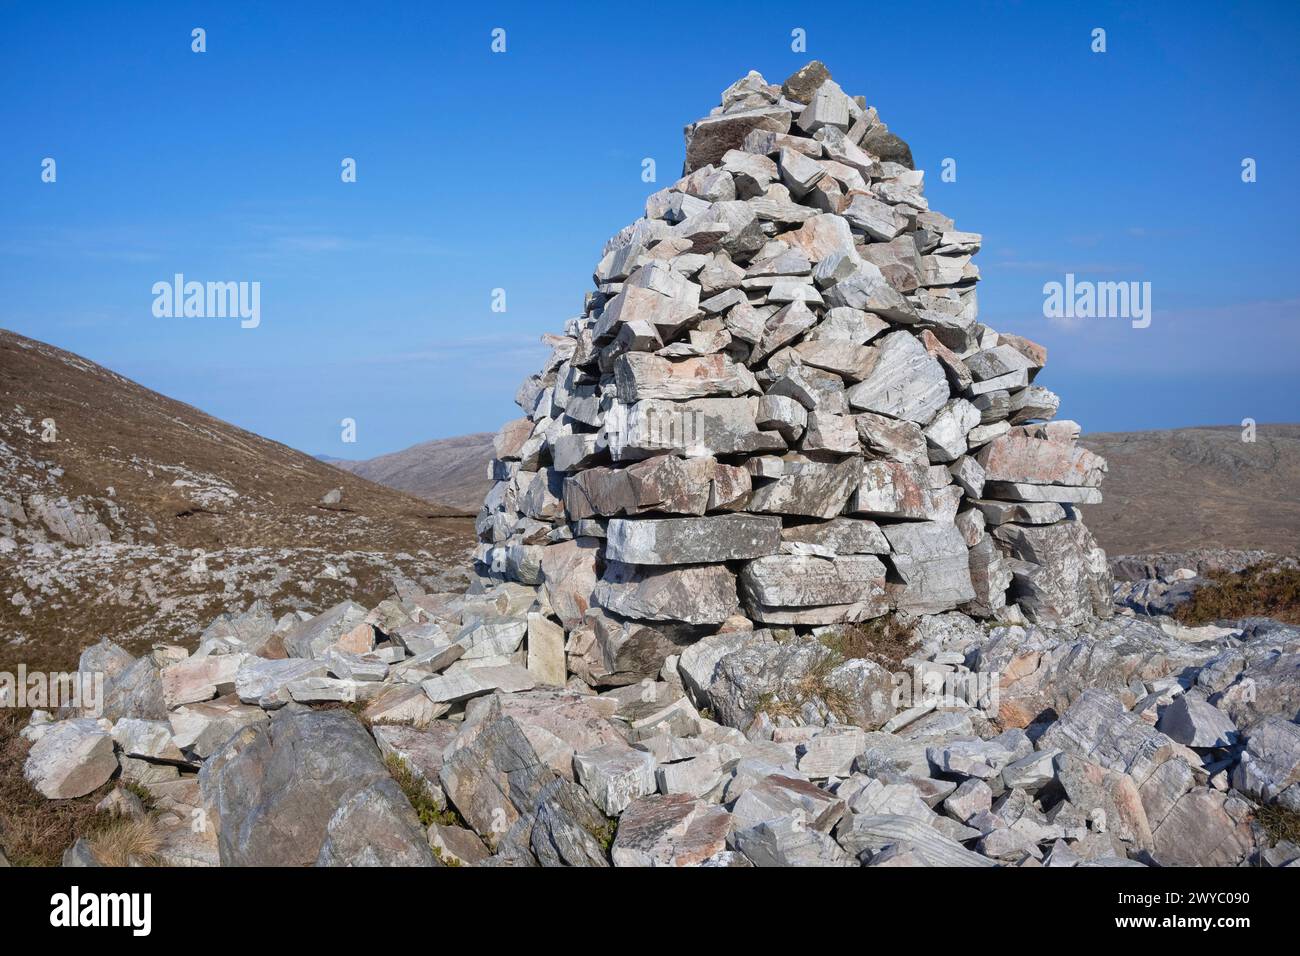 Repubblica d'Irlanda, Contea di Donegal, Gweedore, mini cairn ai piedi dell'Errigal, che è la montagna più alta del Donegal. Foto Stock